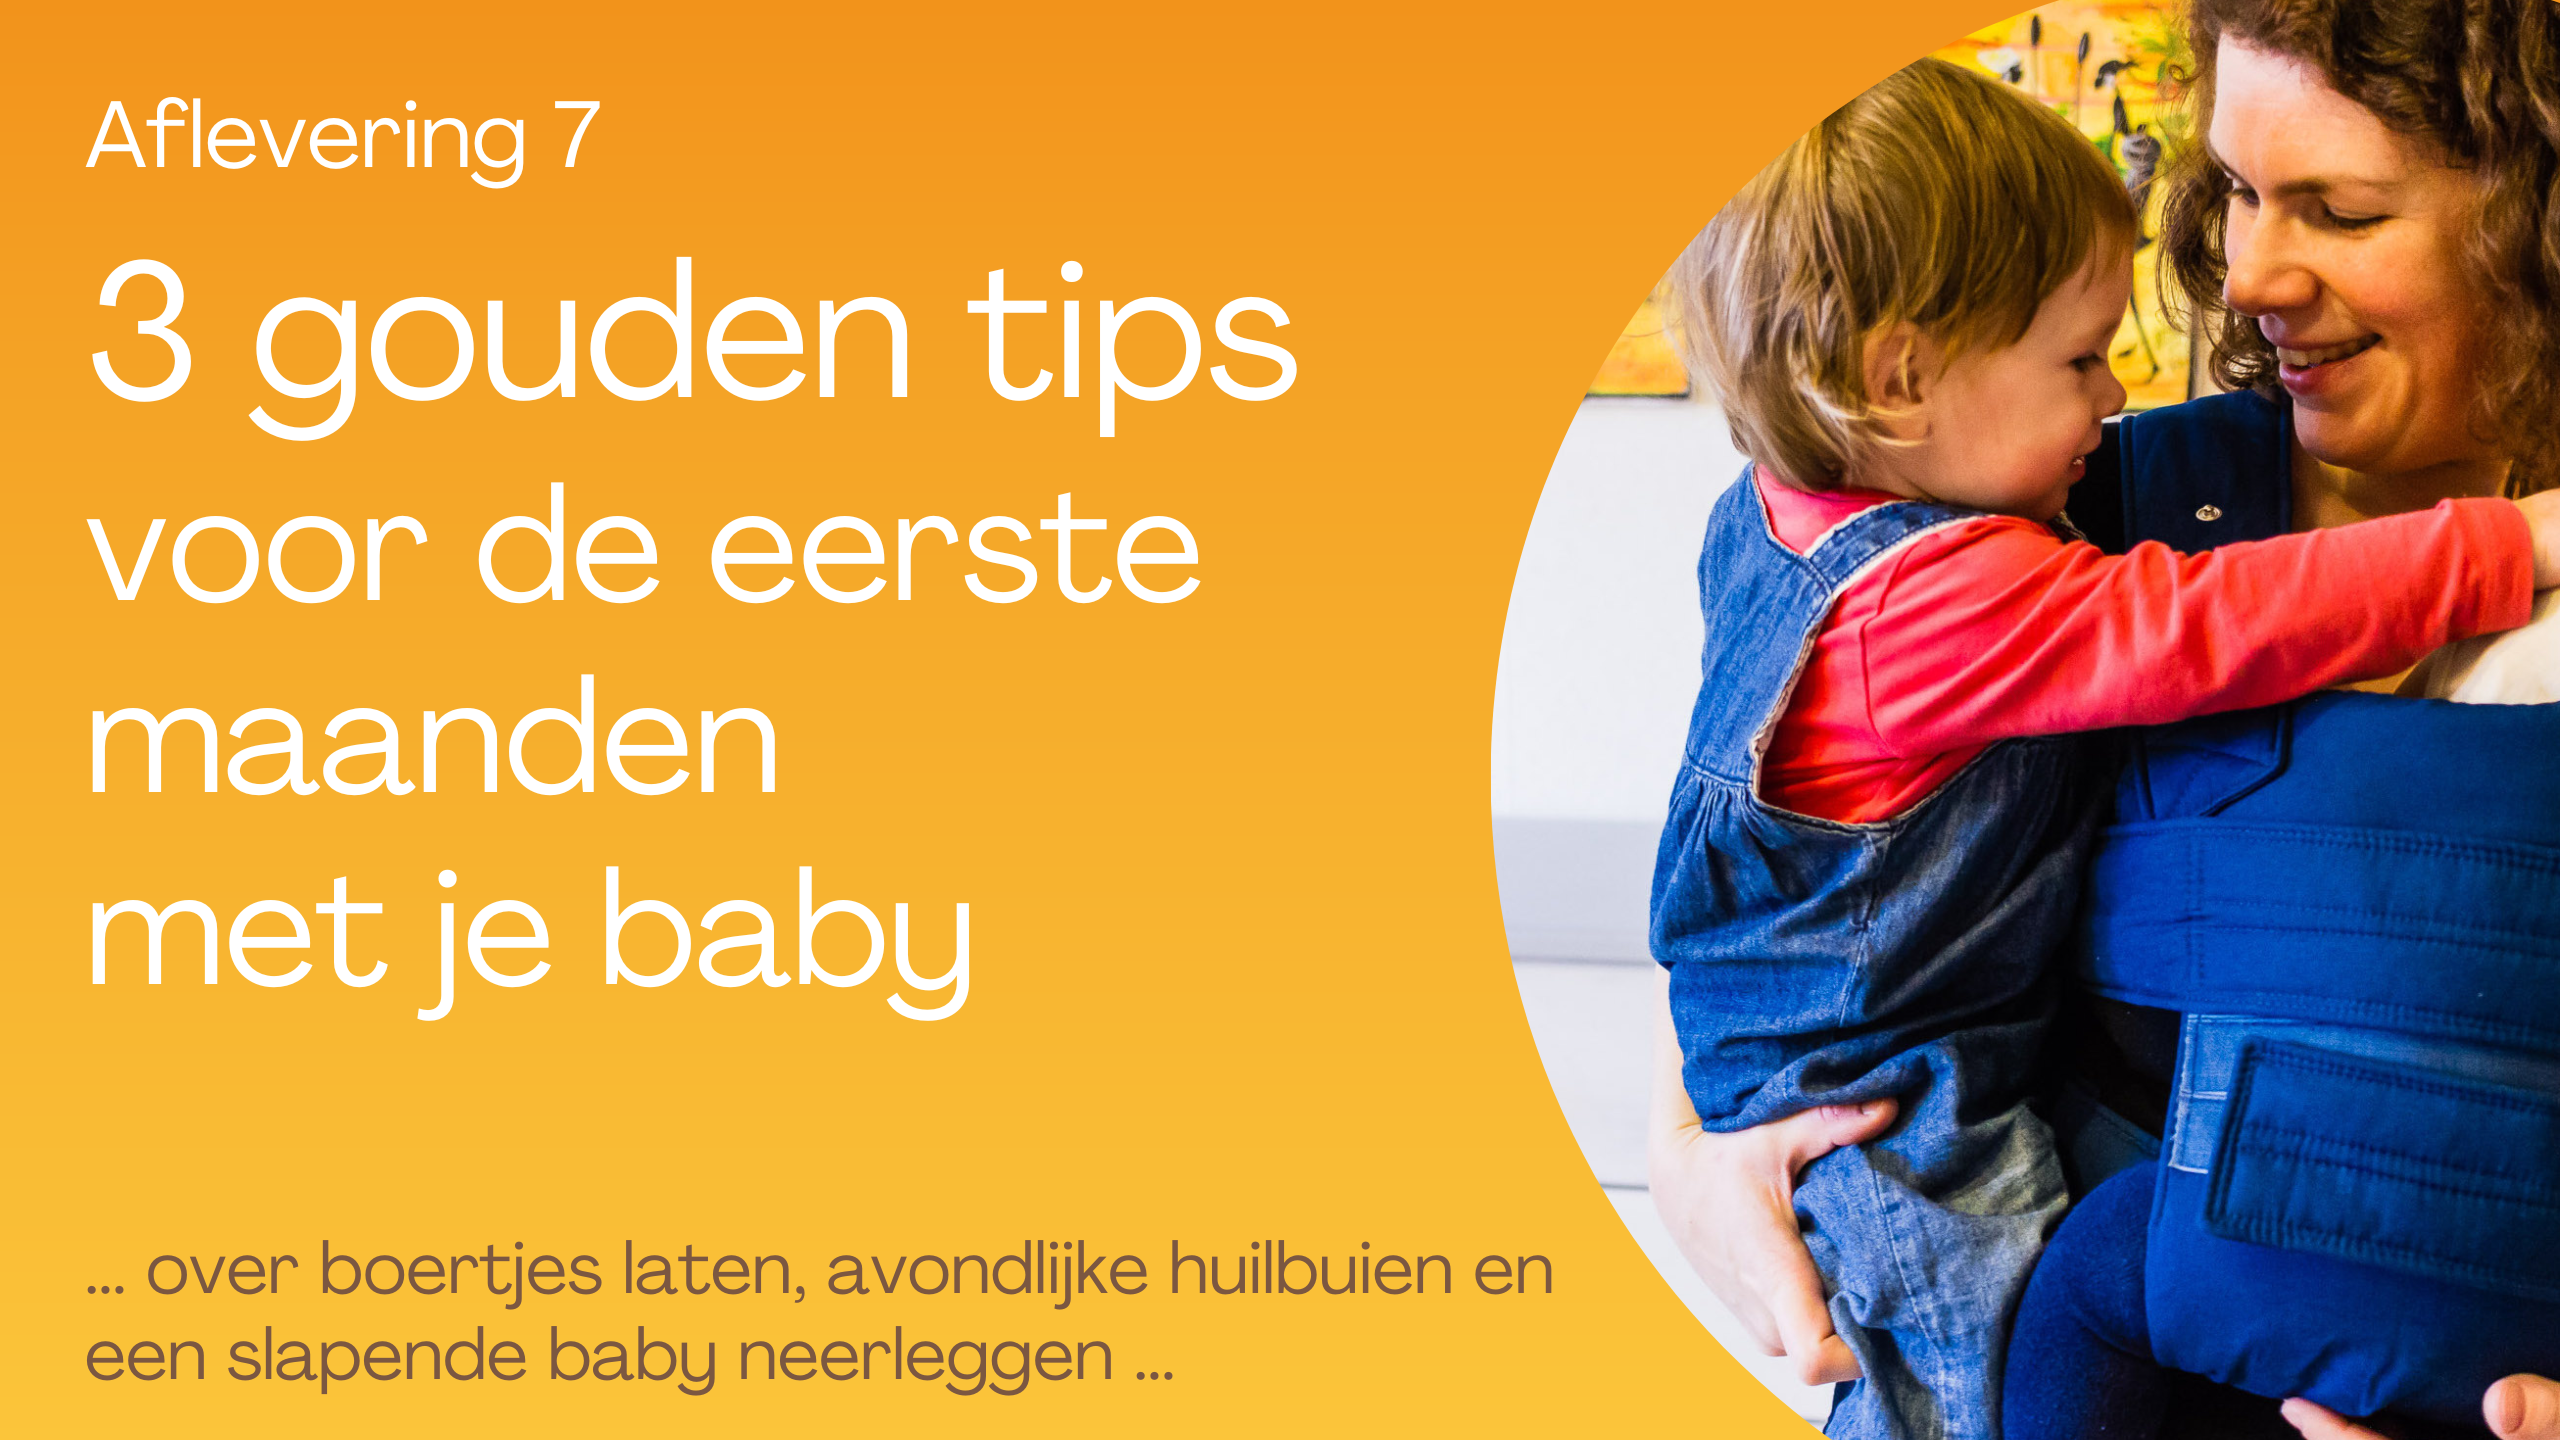 Je bekijkt nu 3 gouden tips voor de eerste maanden met je baby